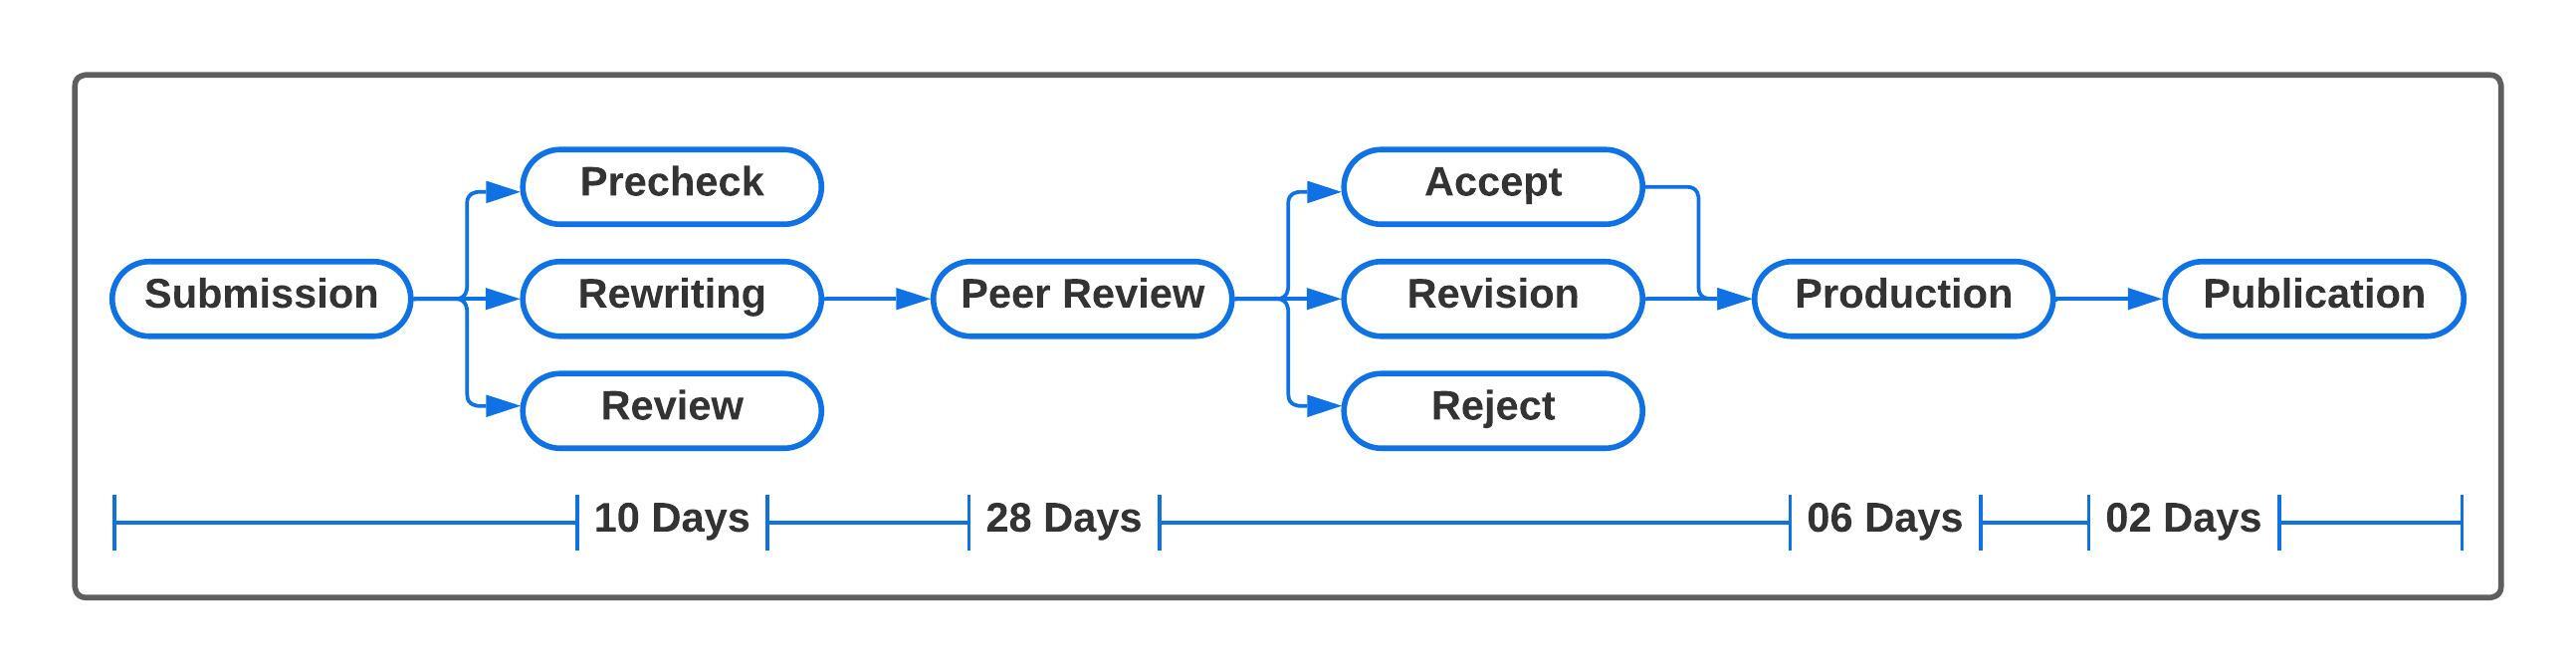 Publication Process